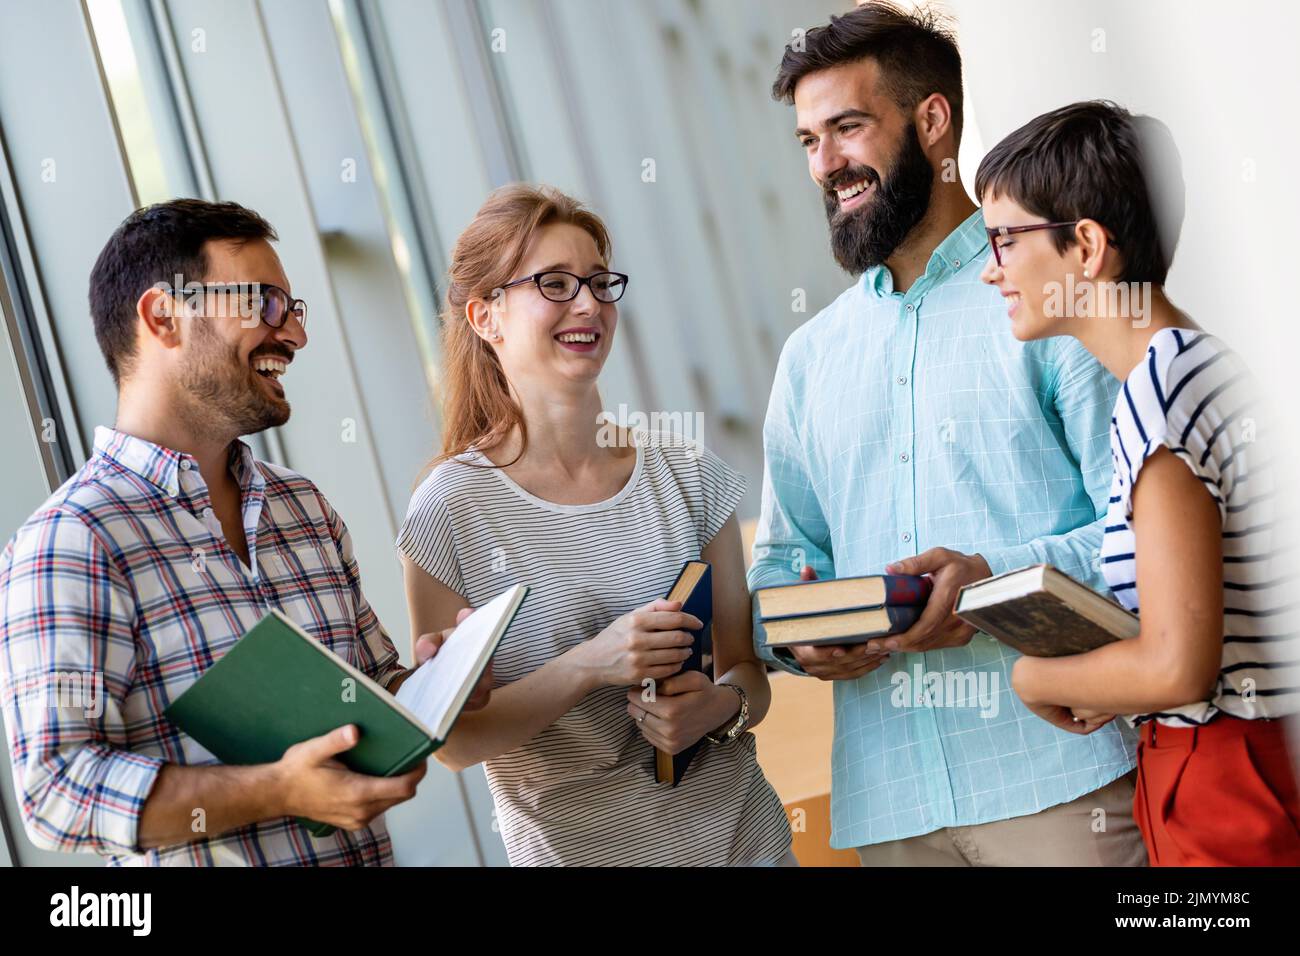 Felices estudiantes universitarios estudiando con libros en la biblioteca. Grupo de personas multirraciales en la universidad Foto de stock